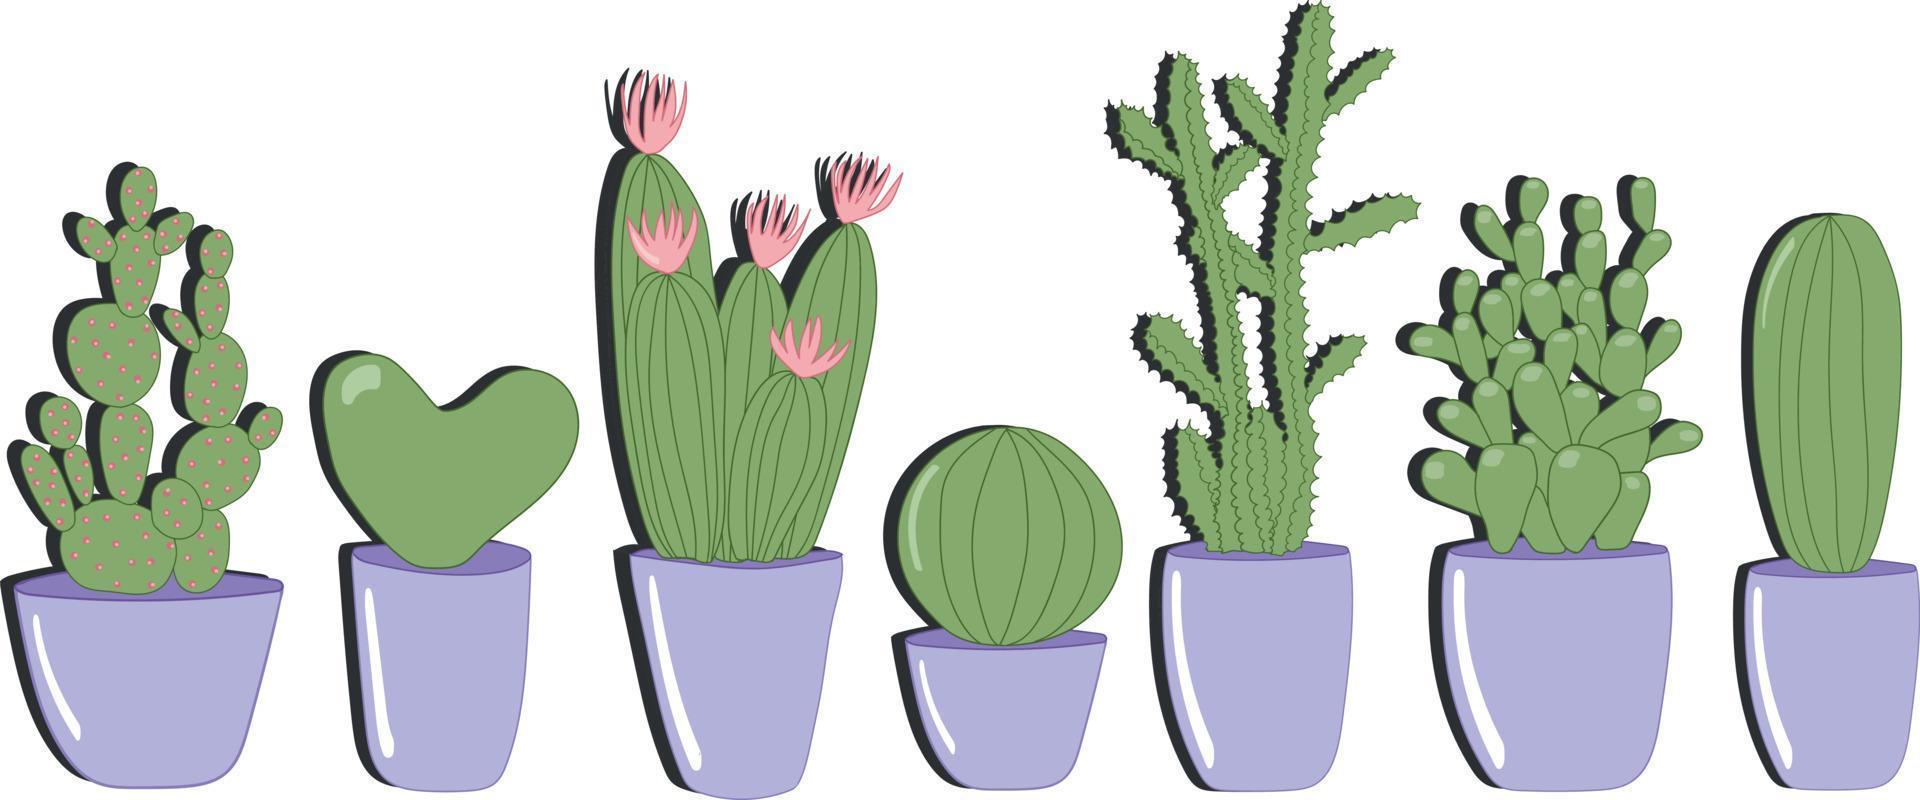 vector grande establece diferentes tipos de cactus en macetas. plantas caseras en macetas aisladas sobre fondo blanco. cactus redondo, cactus de corazón, cactus con flores rosas, cactus afilado.